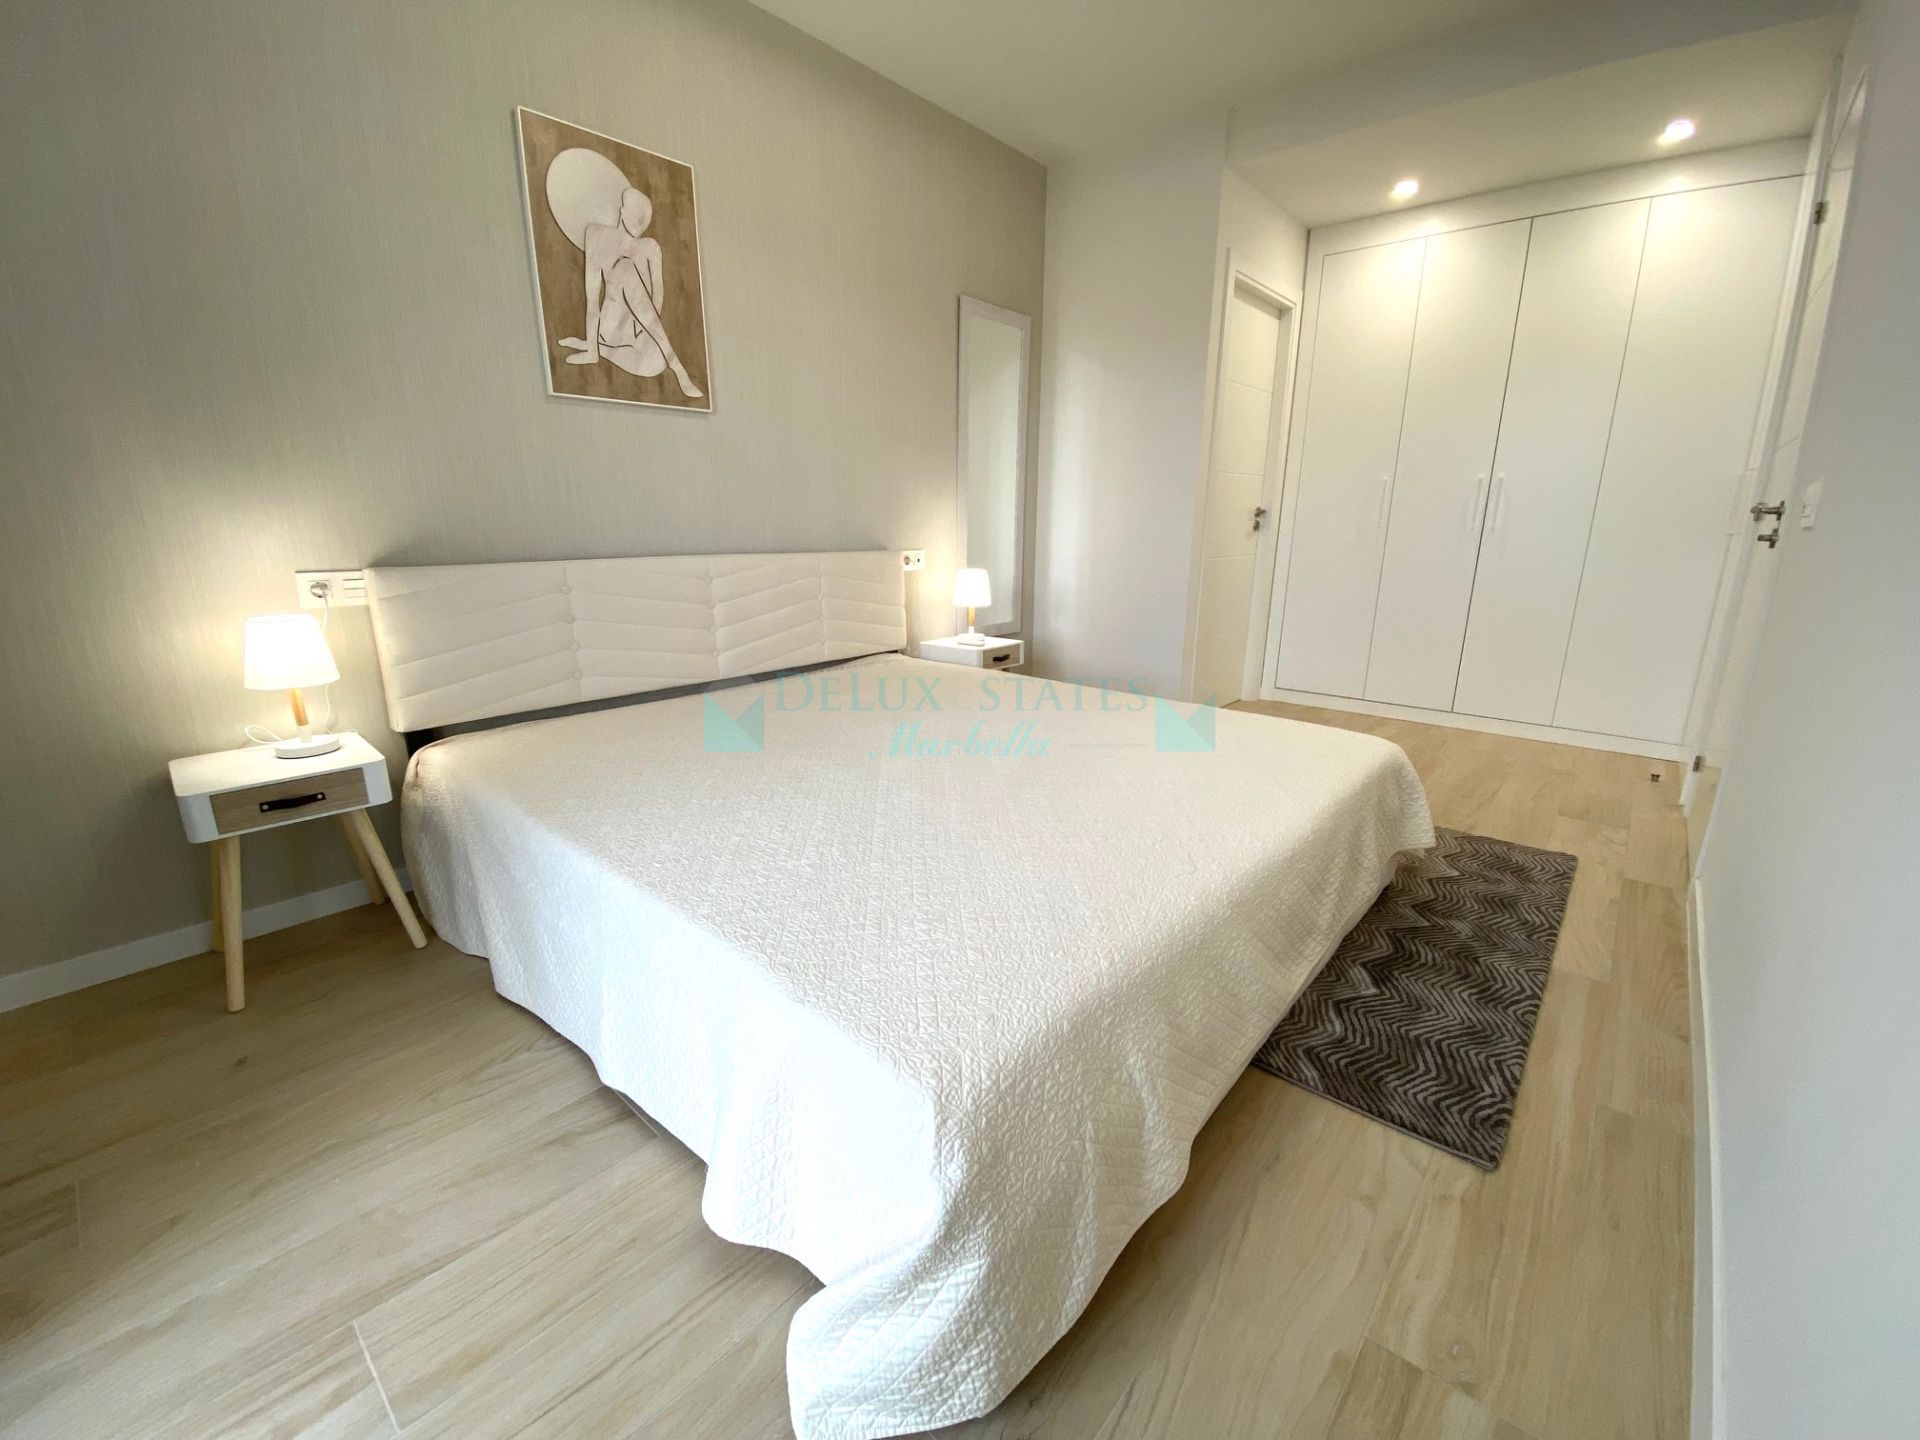 Apartment for rent in Guadaiza, Nueva Andalucia